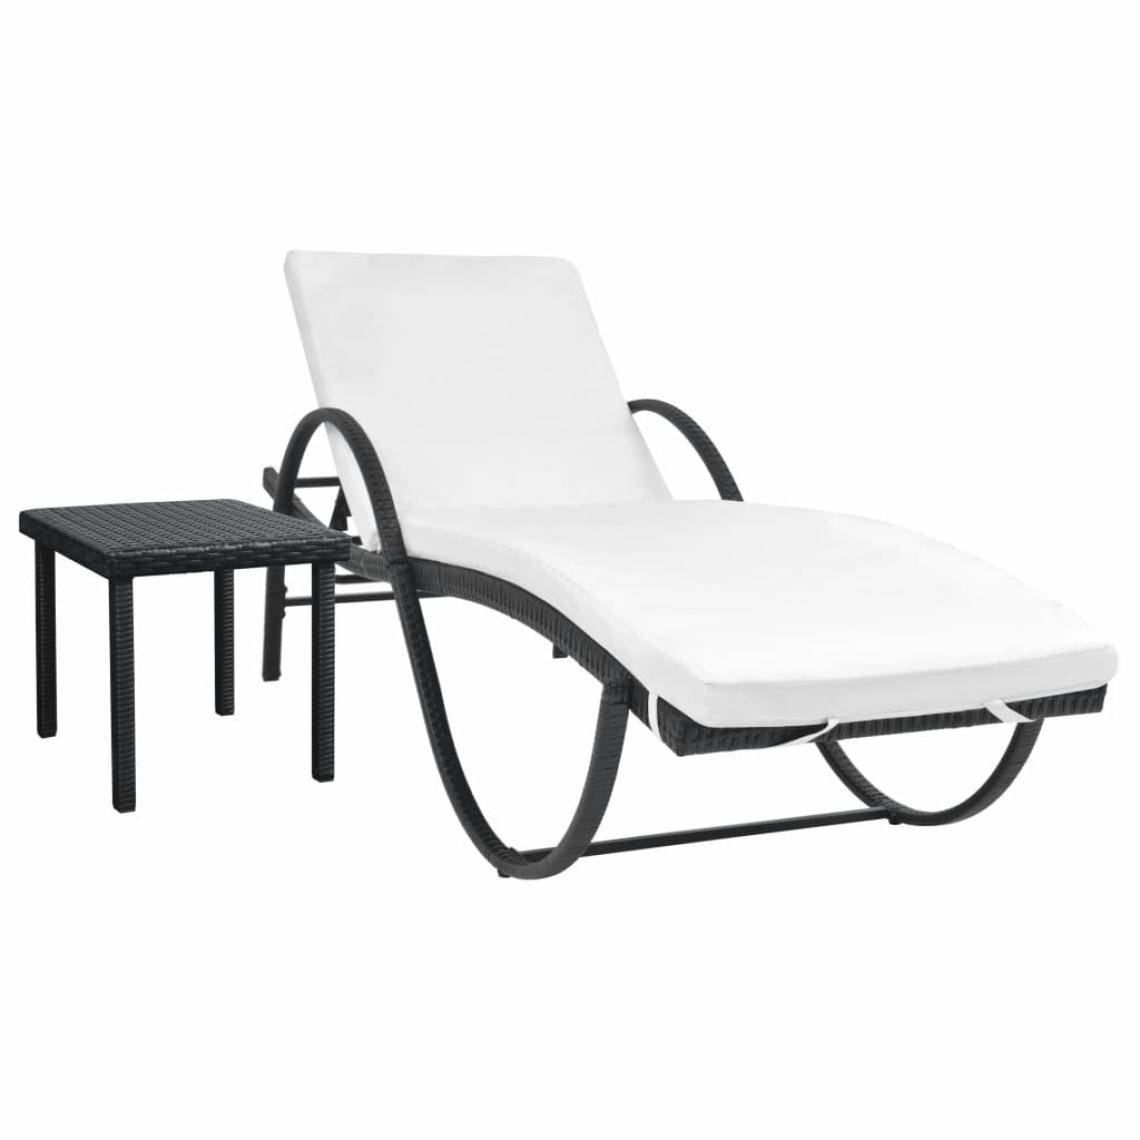 Icaverne - Inedit Sièges d'extérieur categorie Funafuti Chaise longue avec Table Résine tissée Noir - Transats, chaises longues